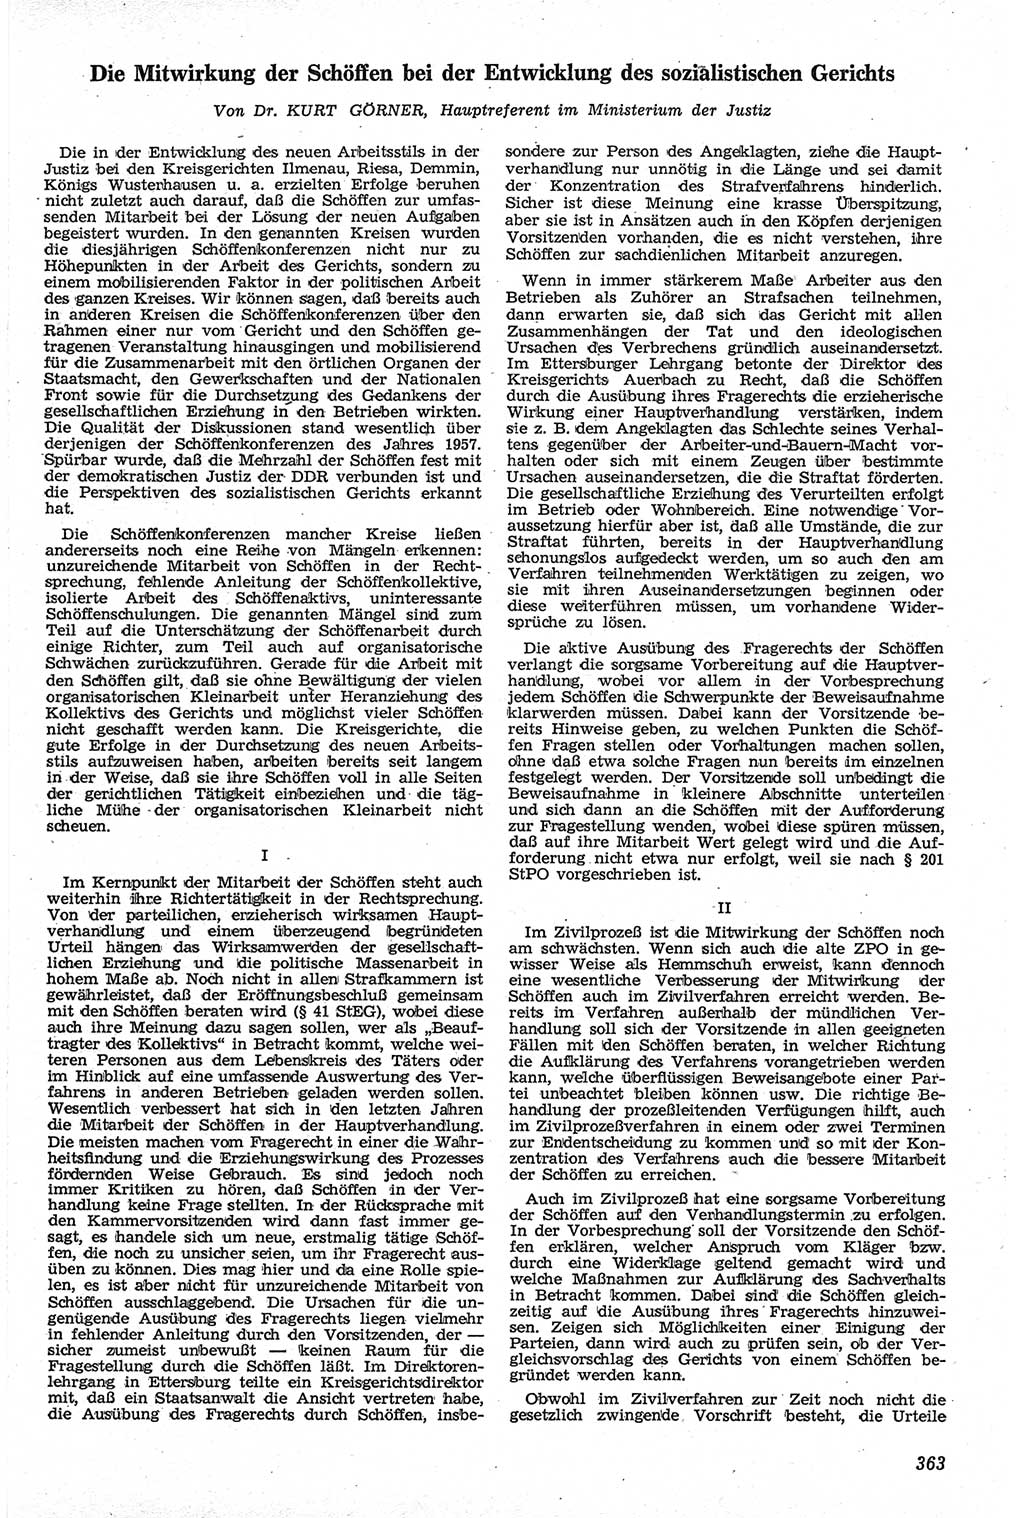 Neue Justiz (NJ), Zeitschrift für Recht und Rechtswissenschaft [Deutsche Demokratische Republik (DDR)], 13. Jahrgang 1959, Seite 363 (NJ DDR 1959, S. 363)